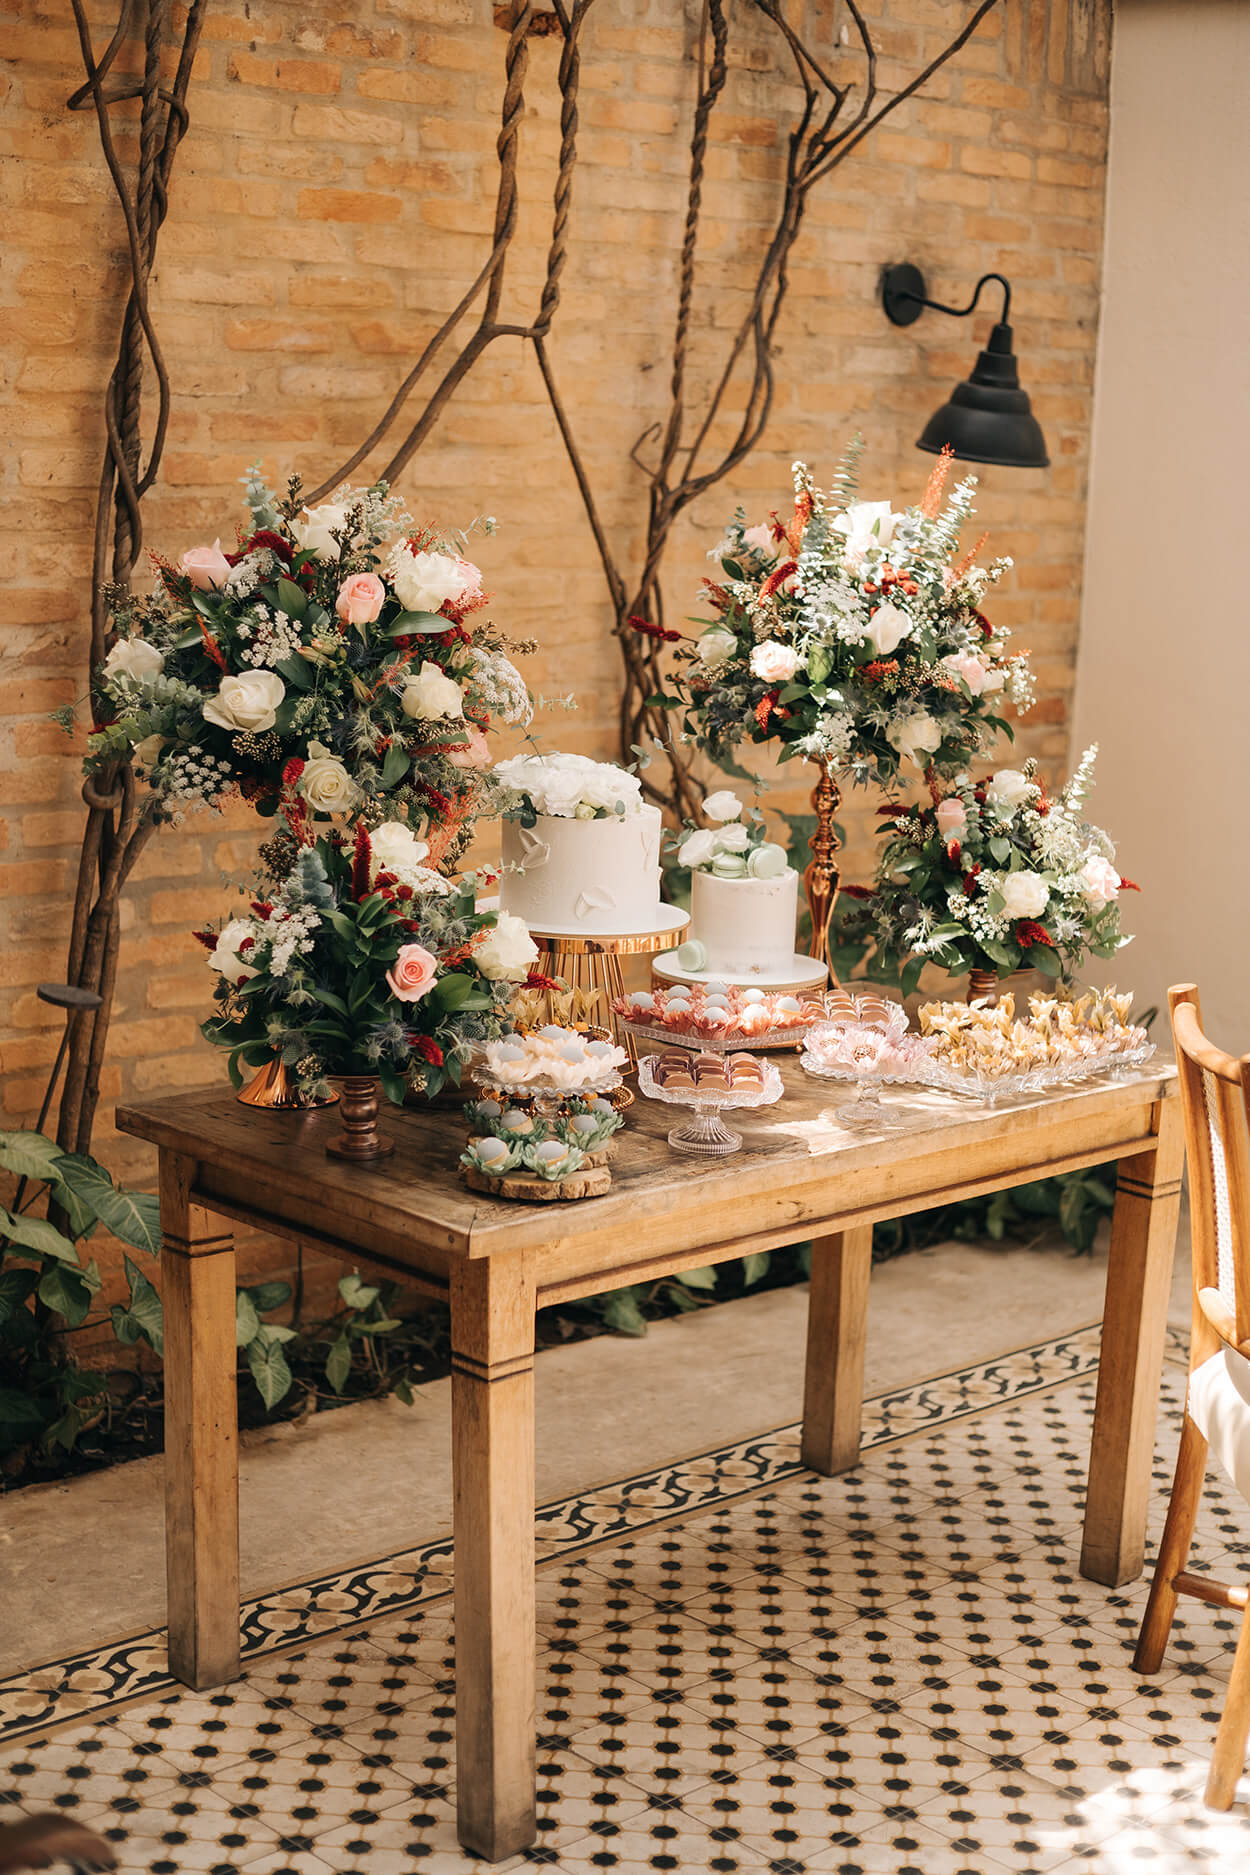 Mesa pequena de madeira com dois bolos redondos de casamento, bandejas com doces de casamento e quatro arranjos com rosas brancas e cor de rosas